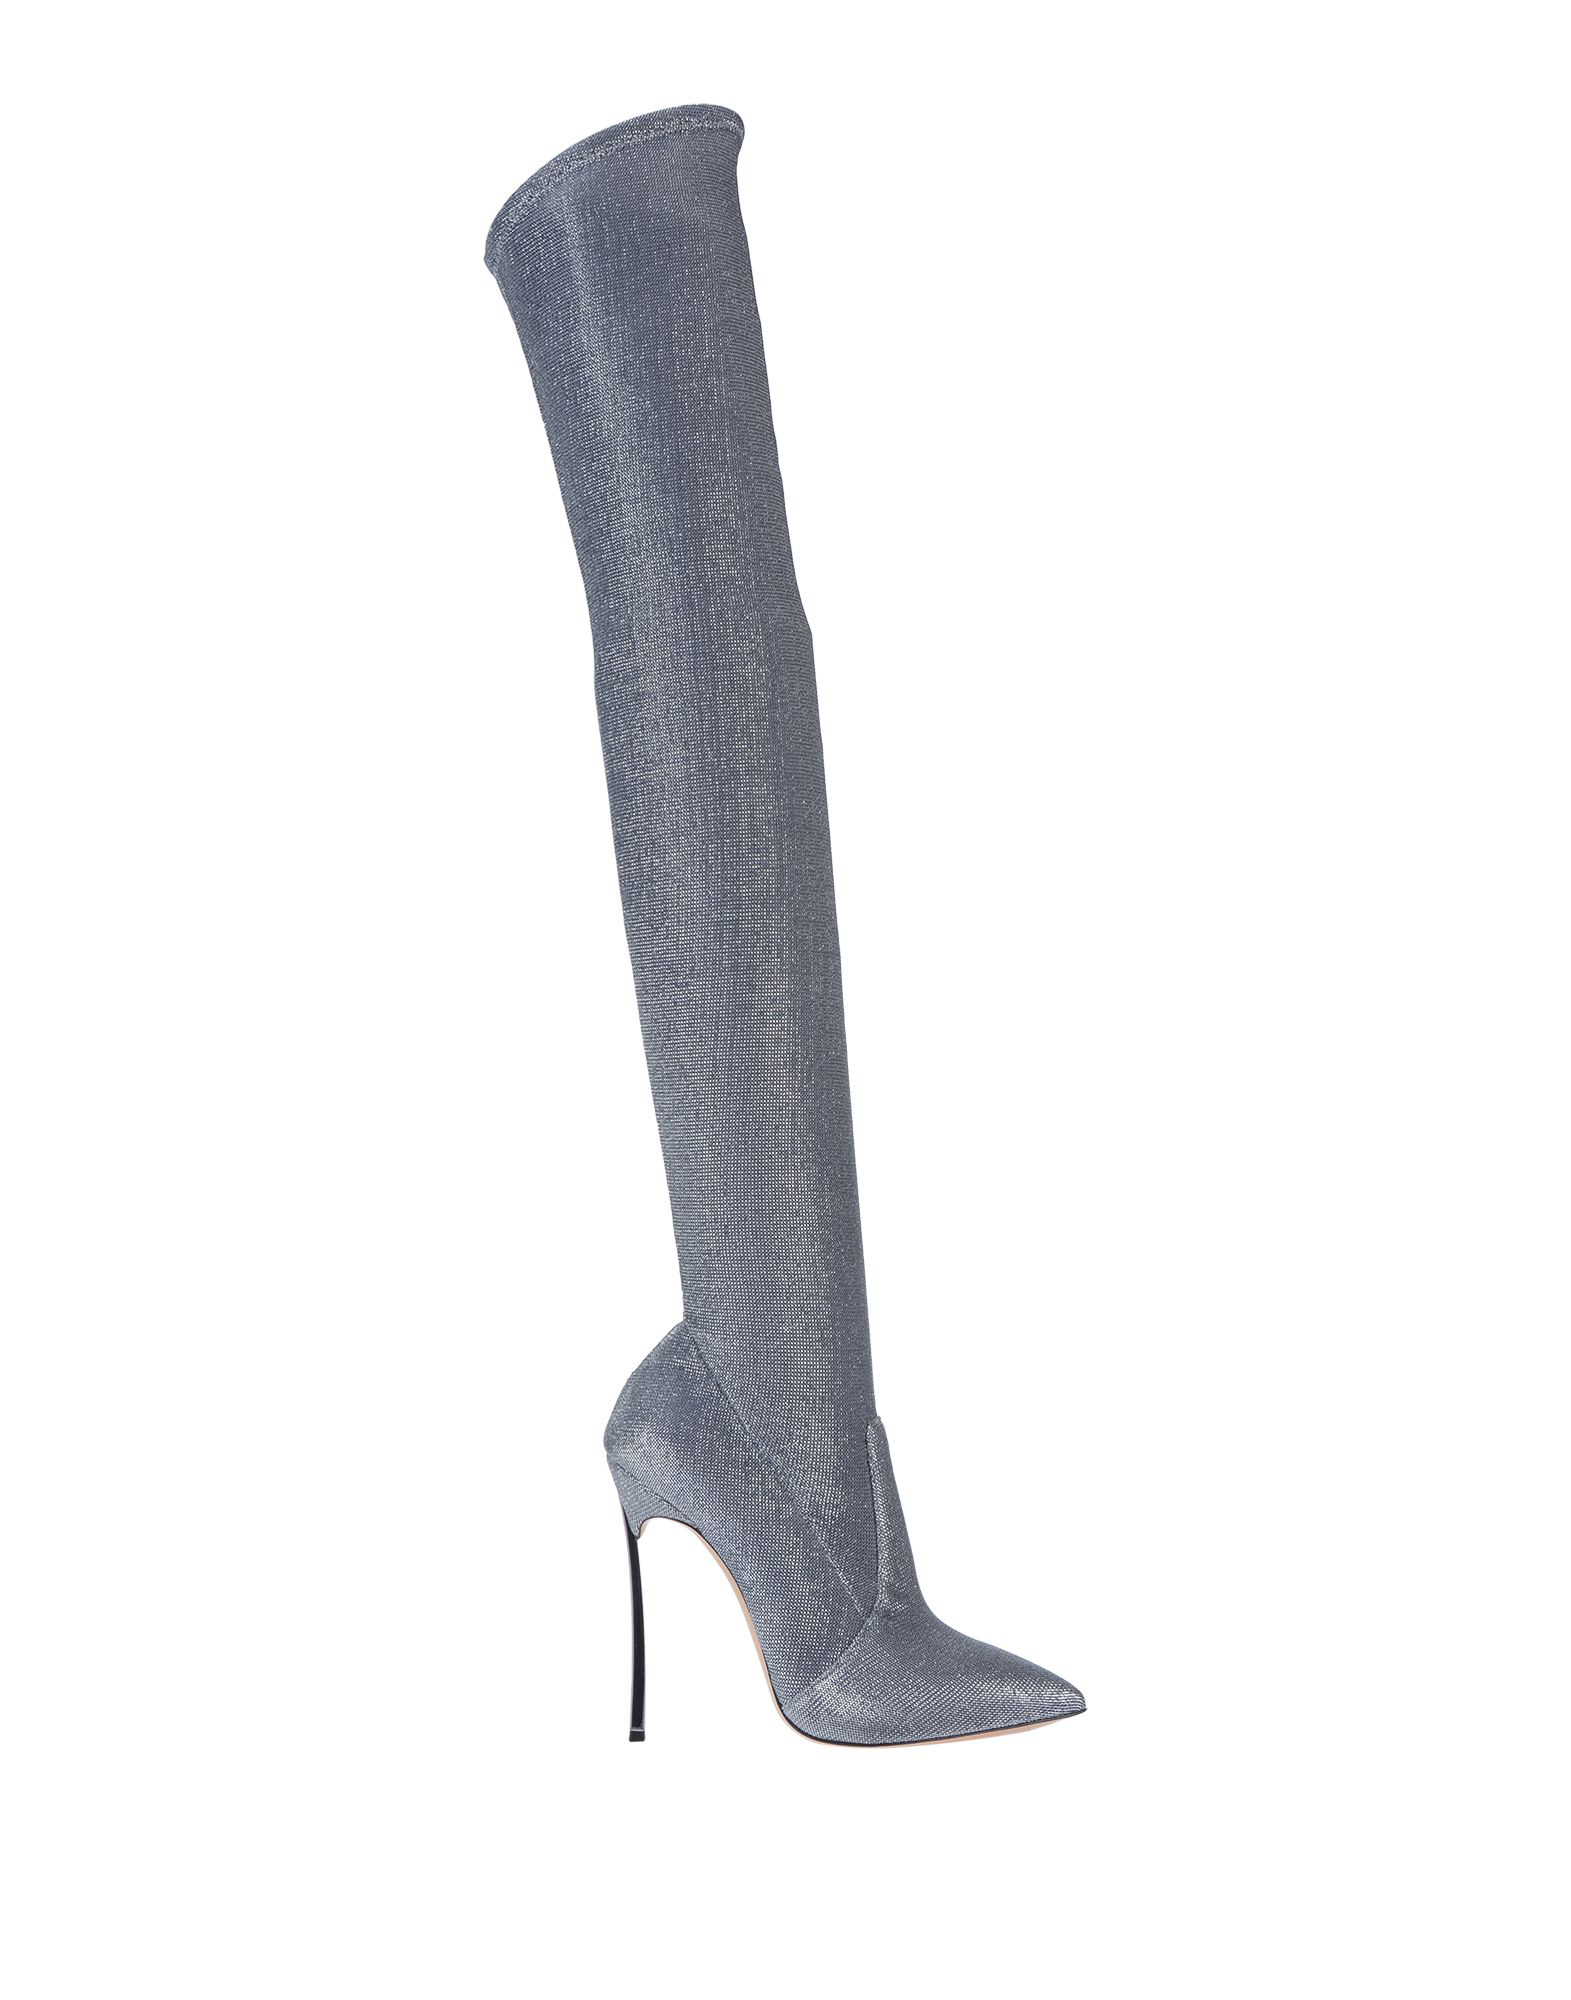 Casadei Boots In Silver | ModeSens